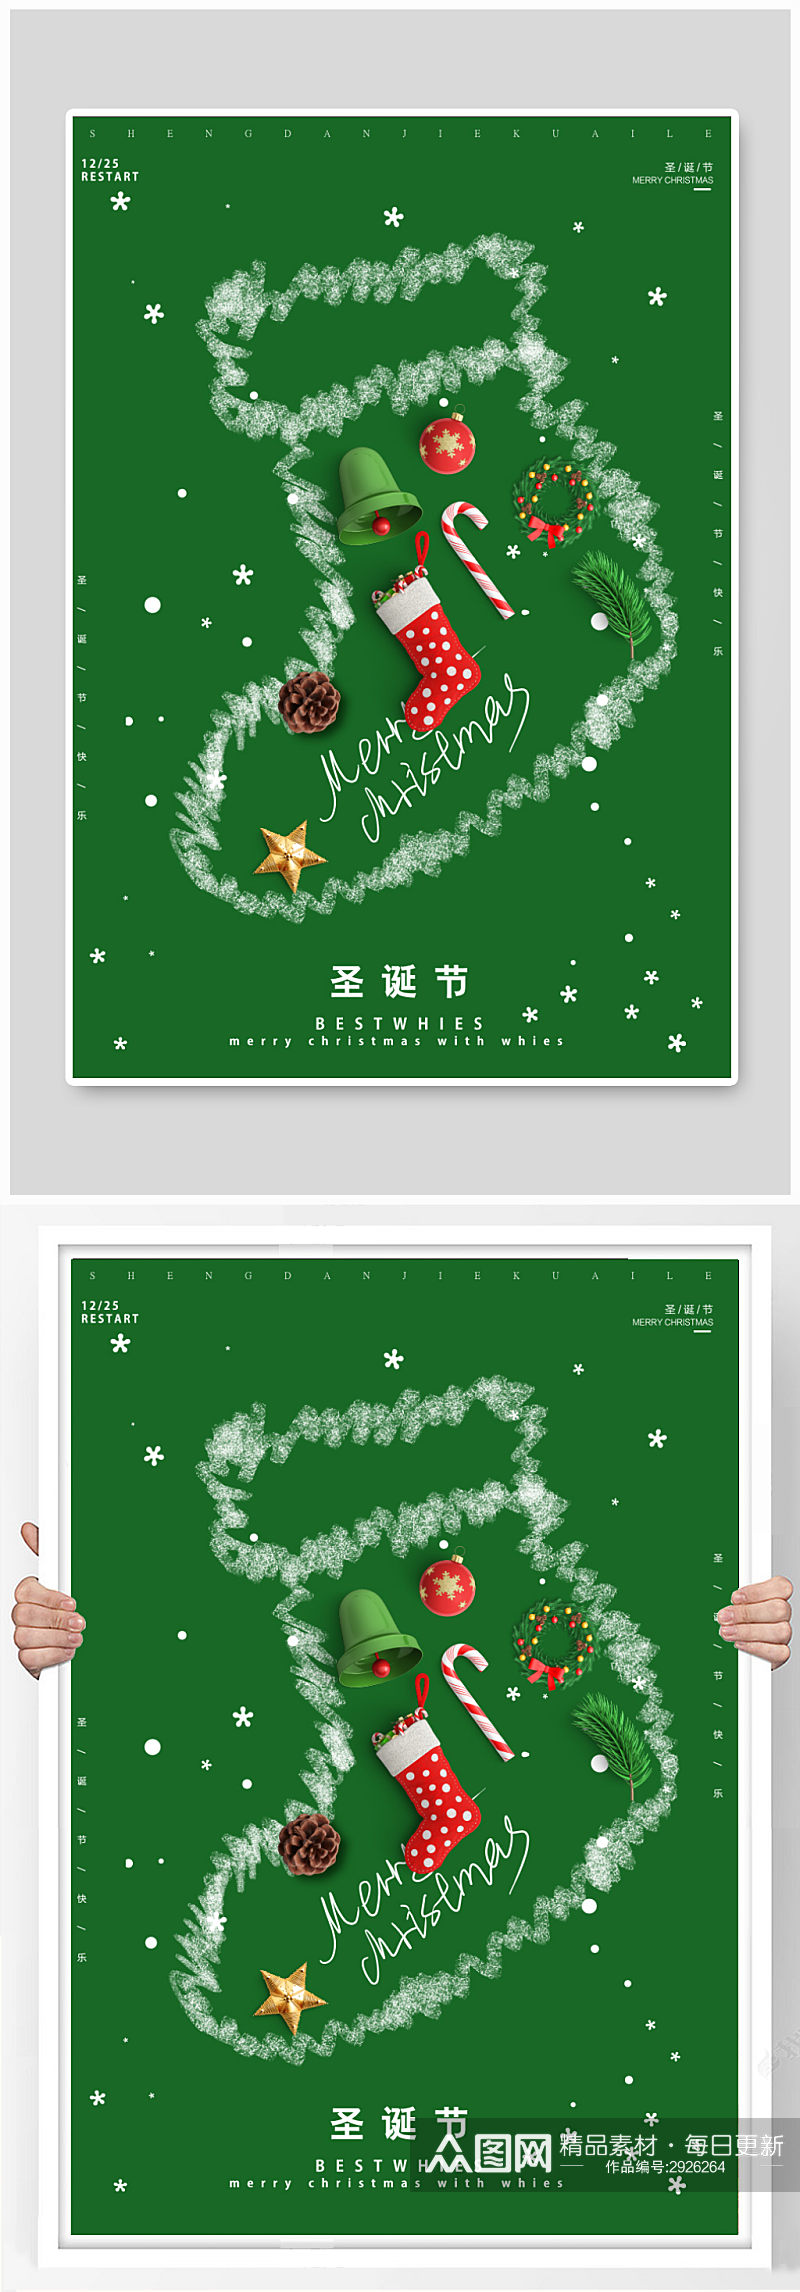 绿色创意圣诞袜圣诞节海报素材